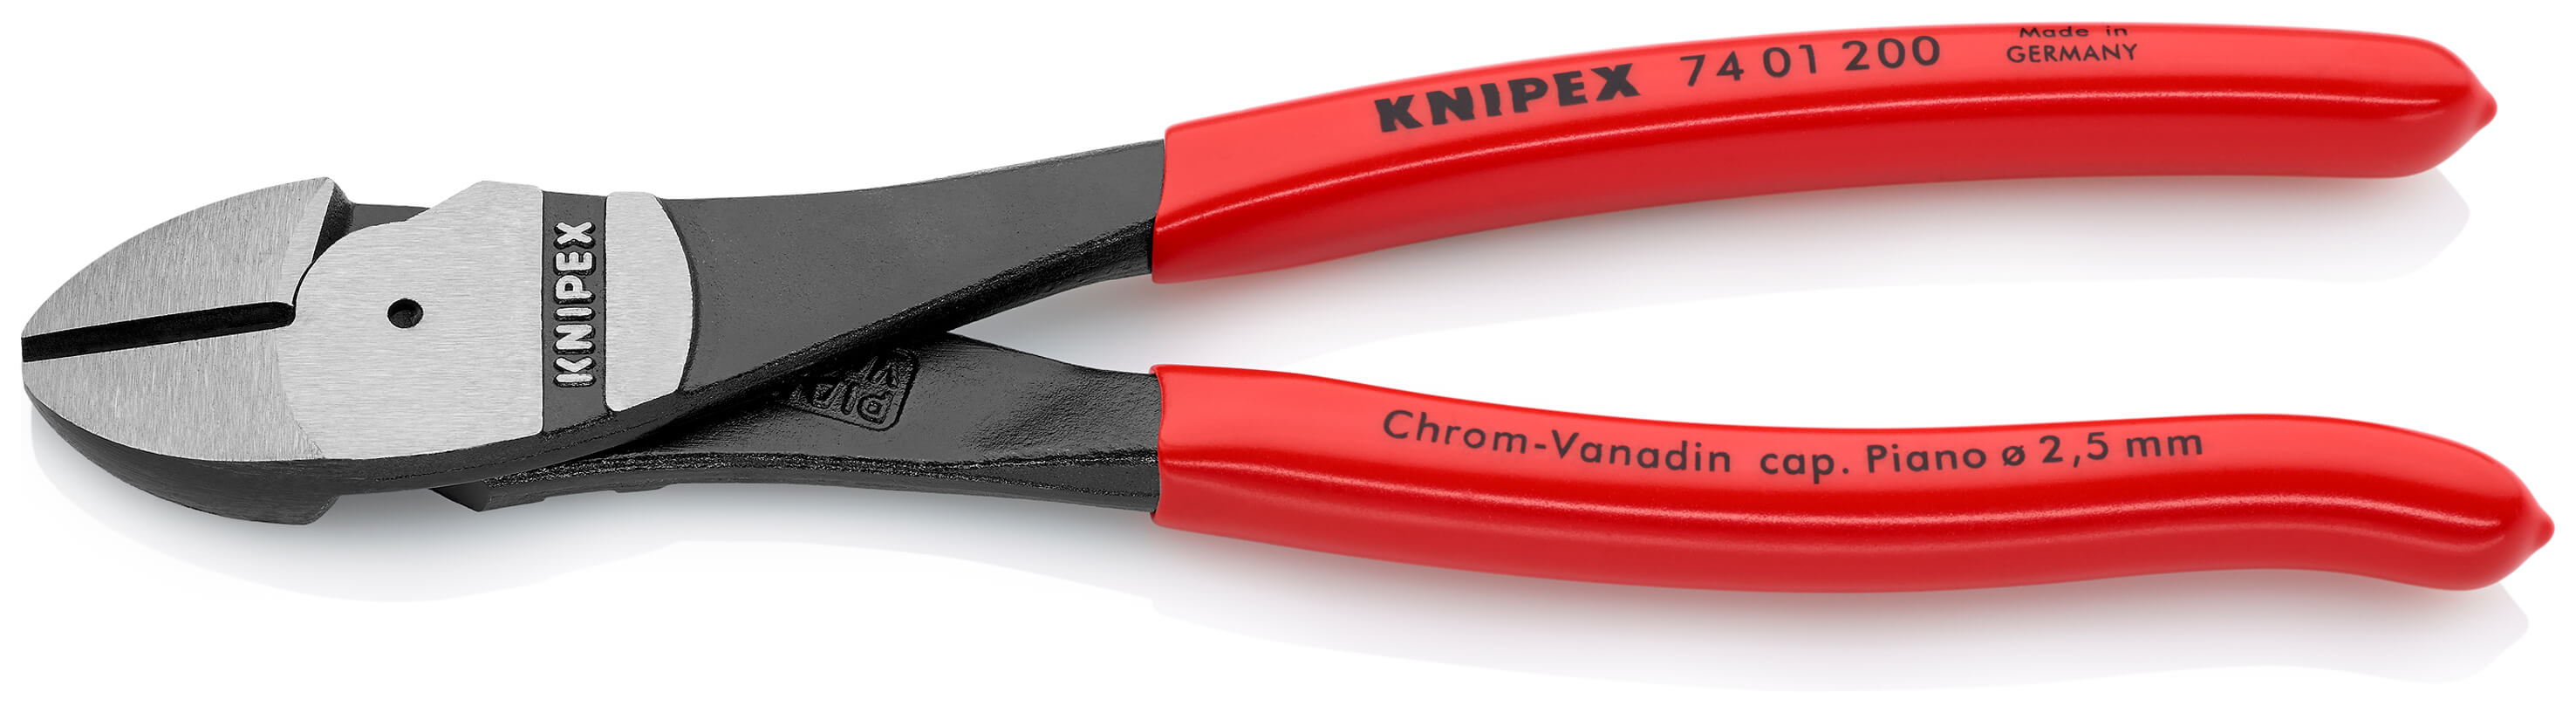 KNIPEX 74 01 200 Kraft-Seitenschneider 200 mm schwarz atramentiert mit Kunststoff überzogen poliert SB-Karte/Blister